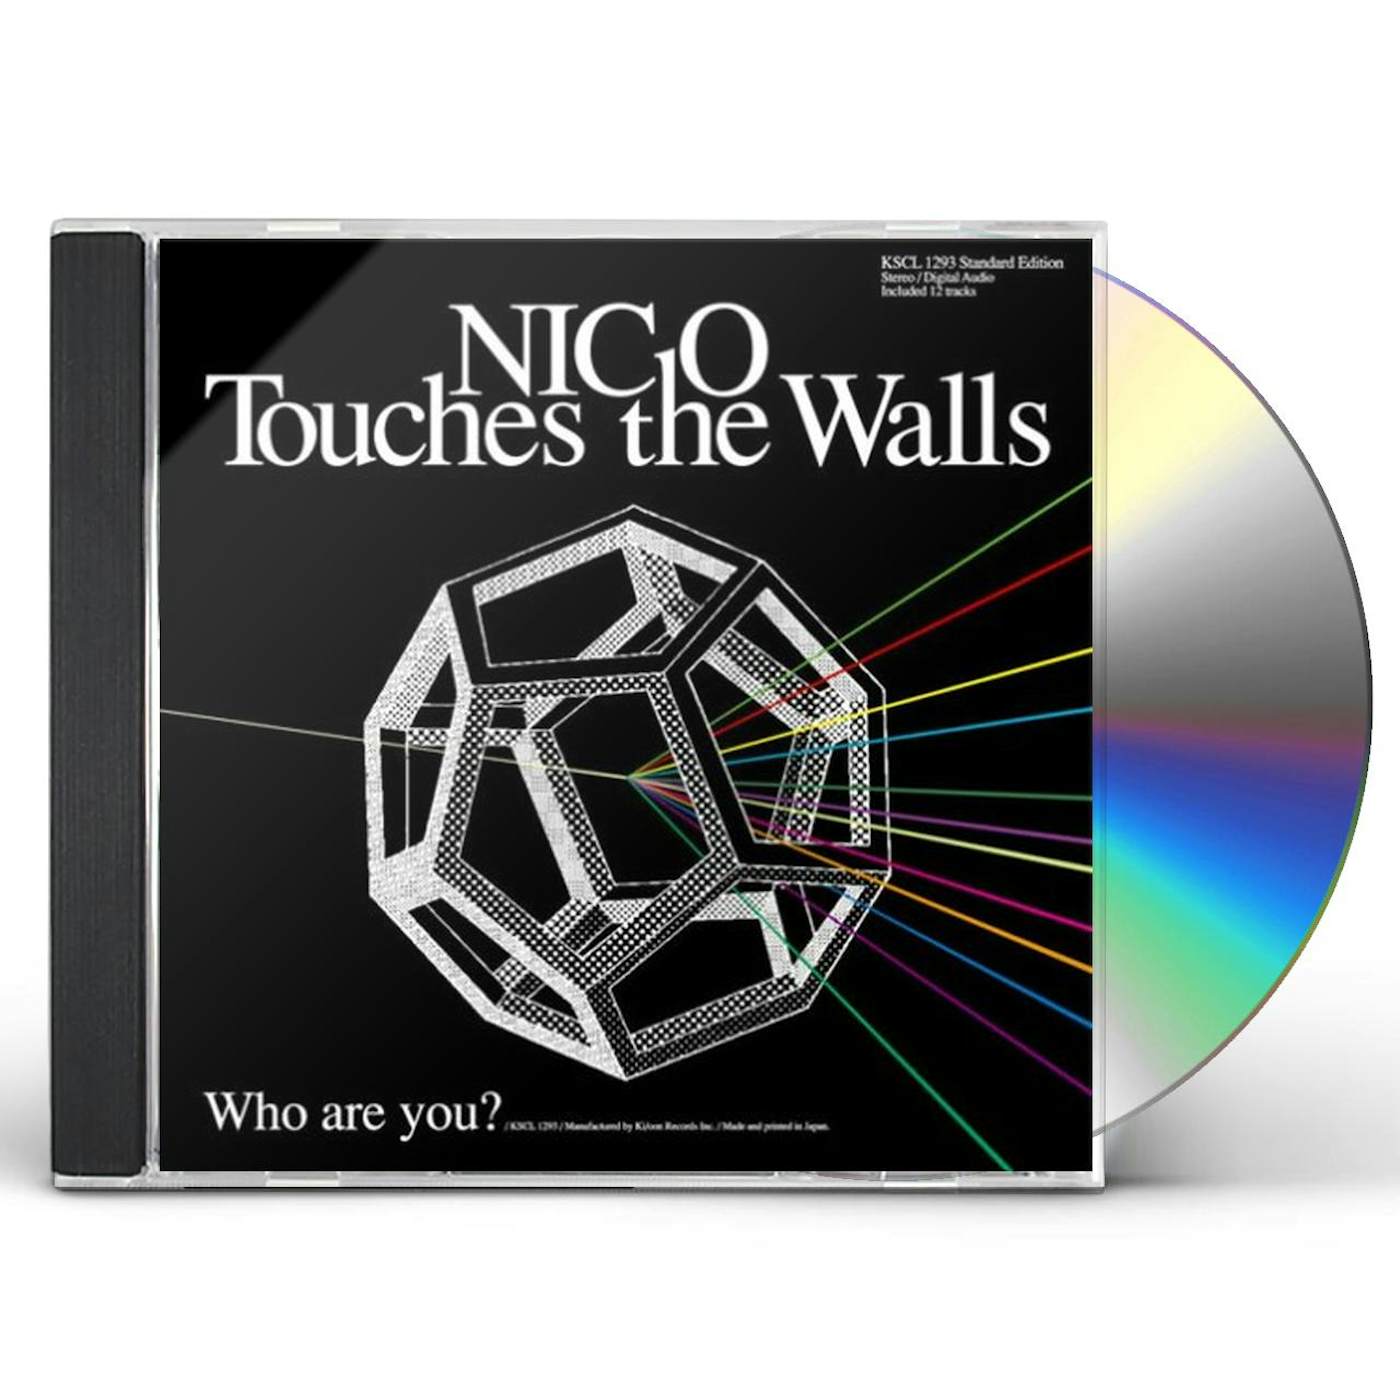 Walls: : CDs & Vinyl